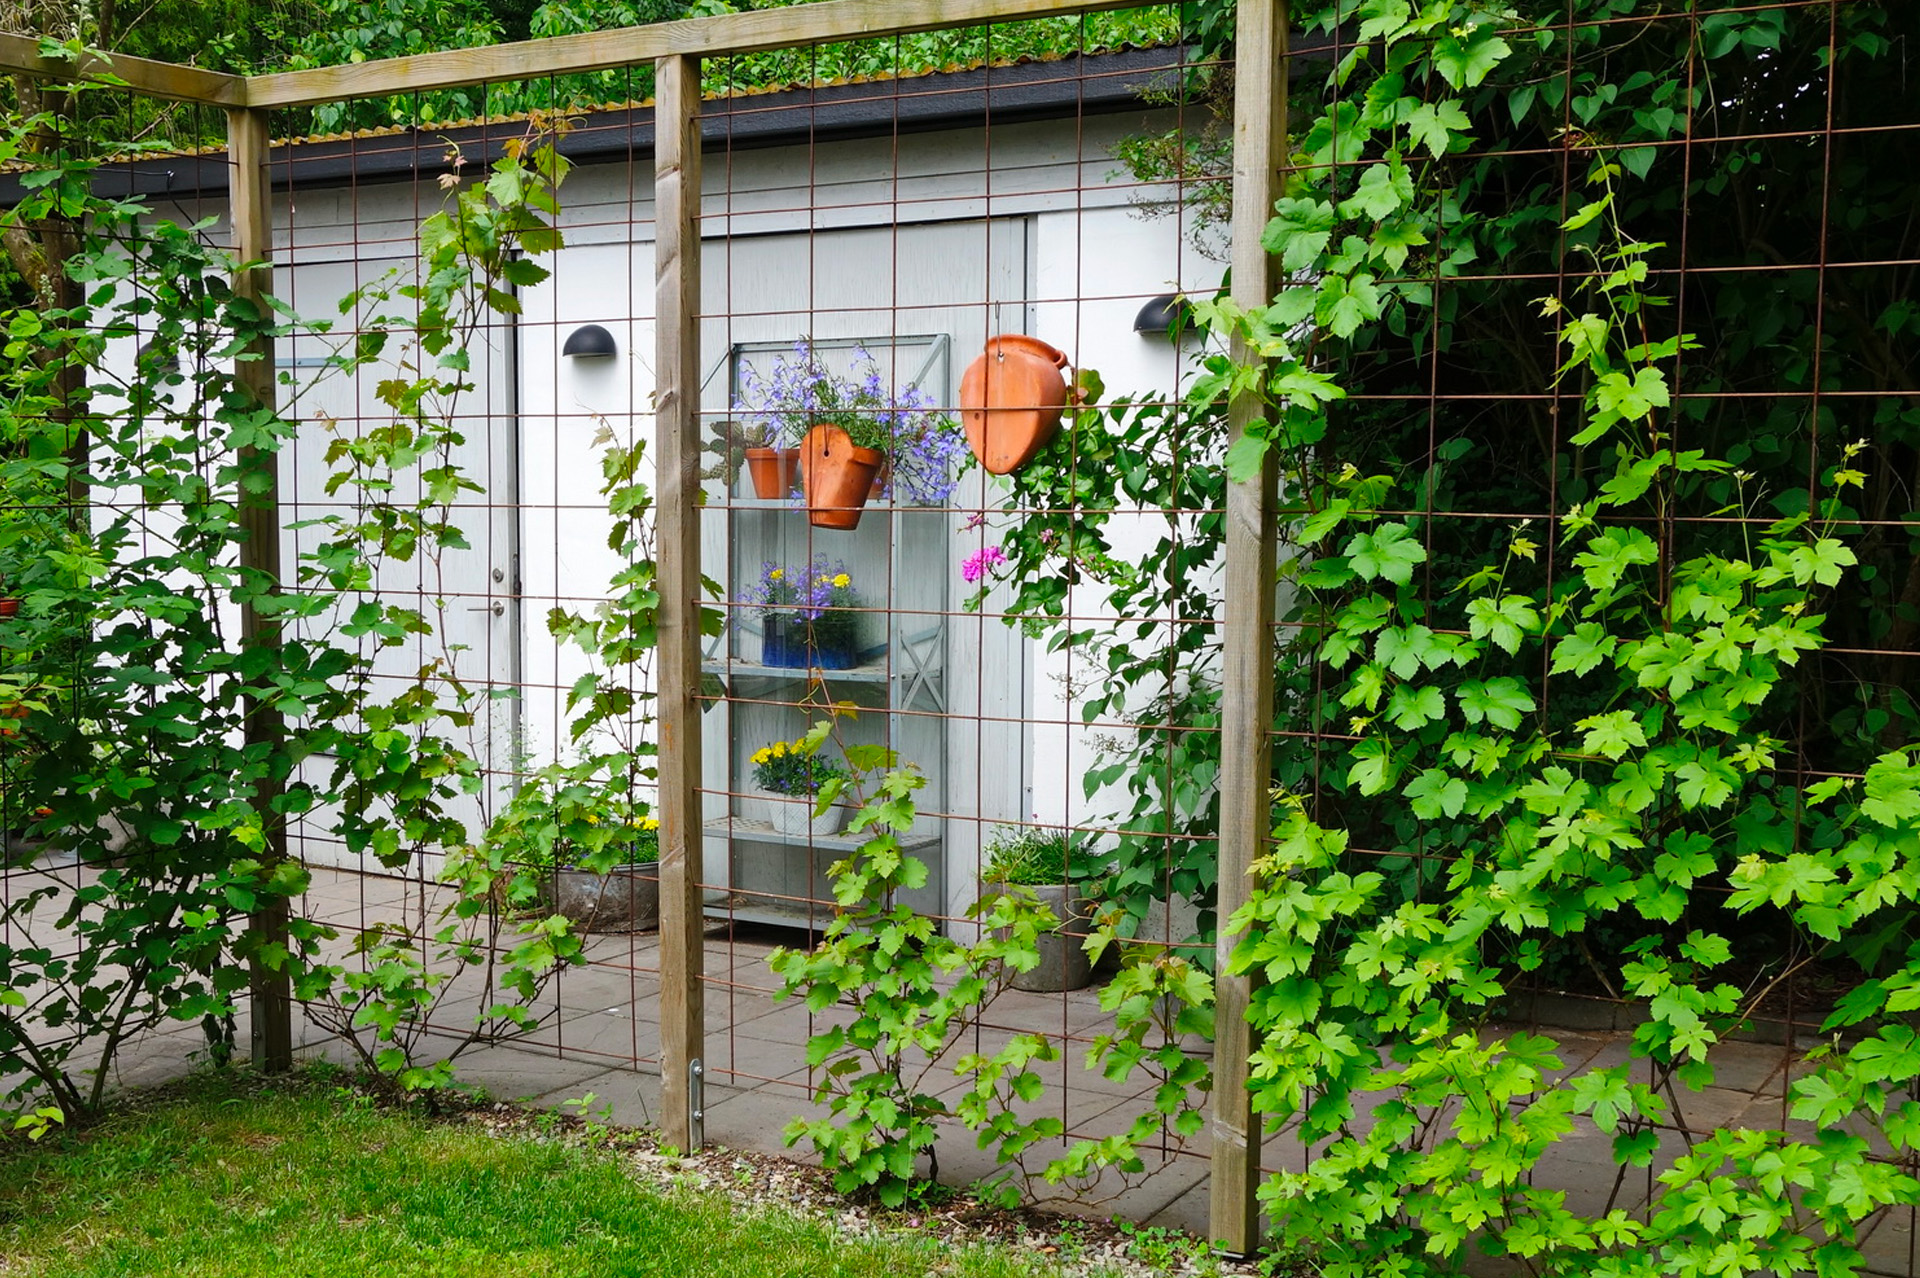 Top 10 des meilleures idées pour clôturer son jardin